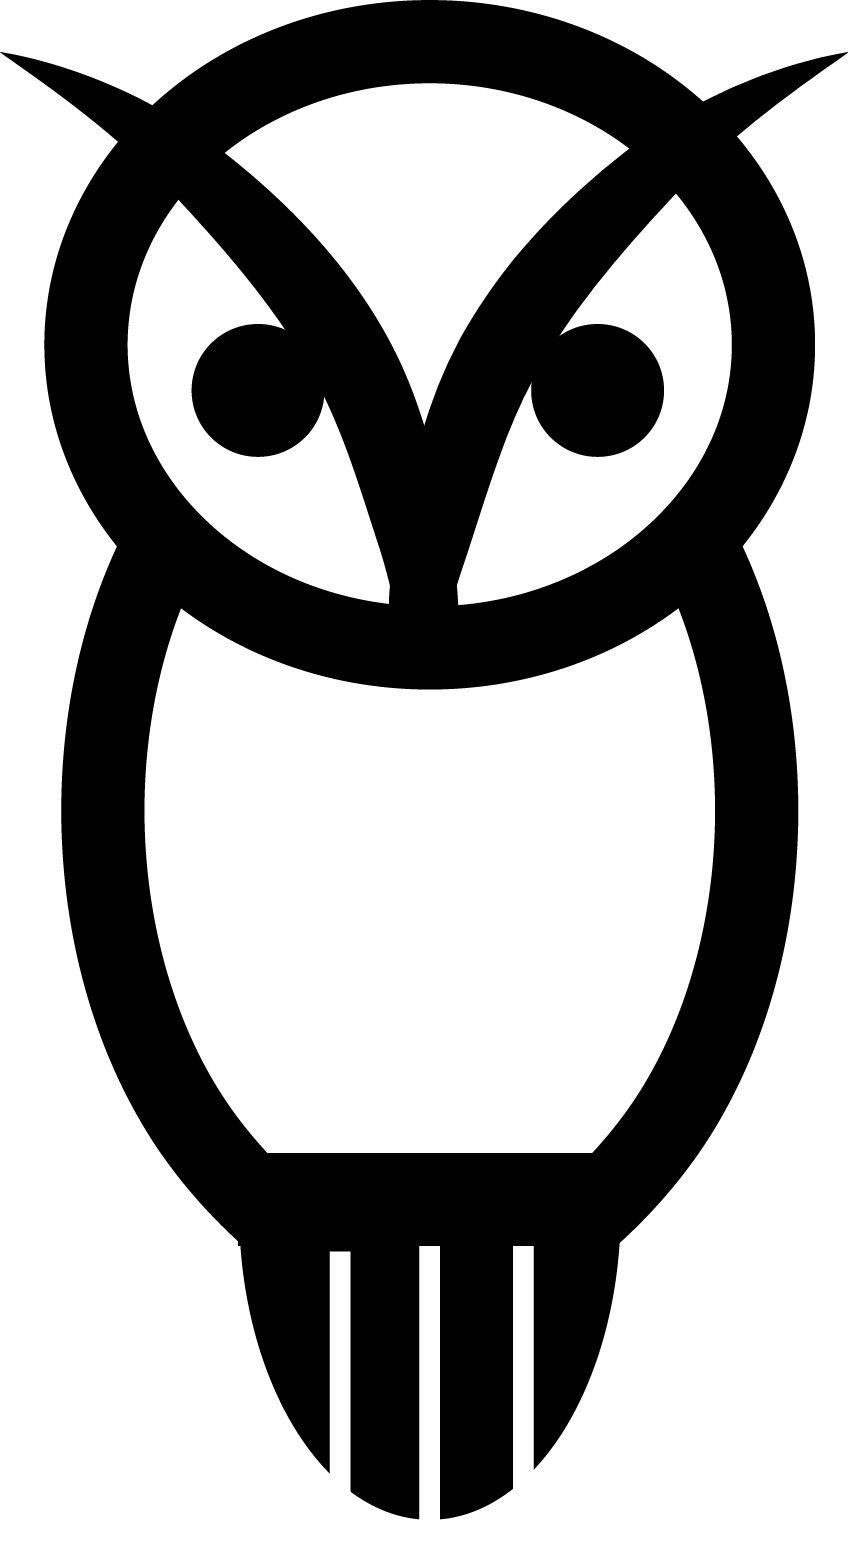 Athena Owl Logo - Athena Porteous